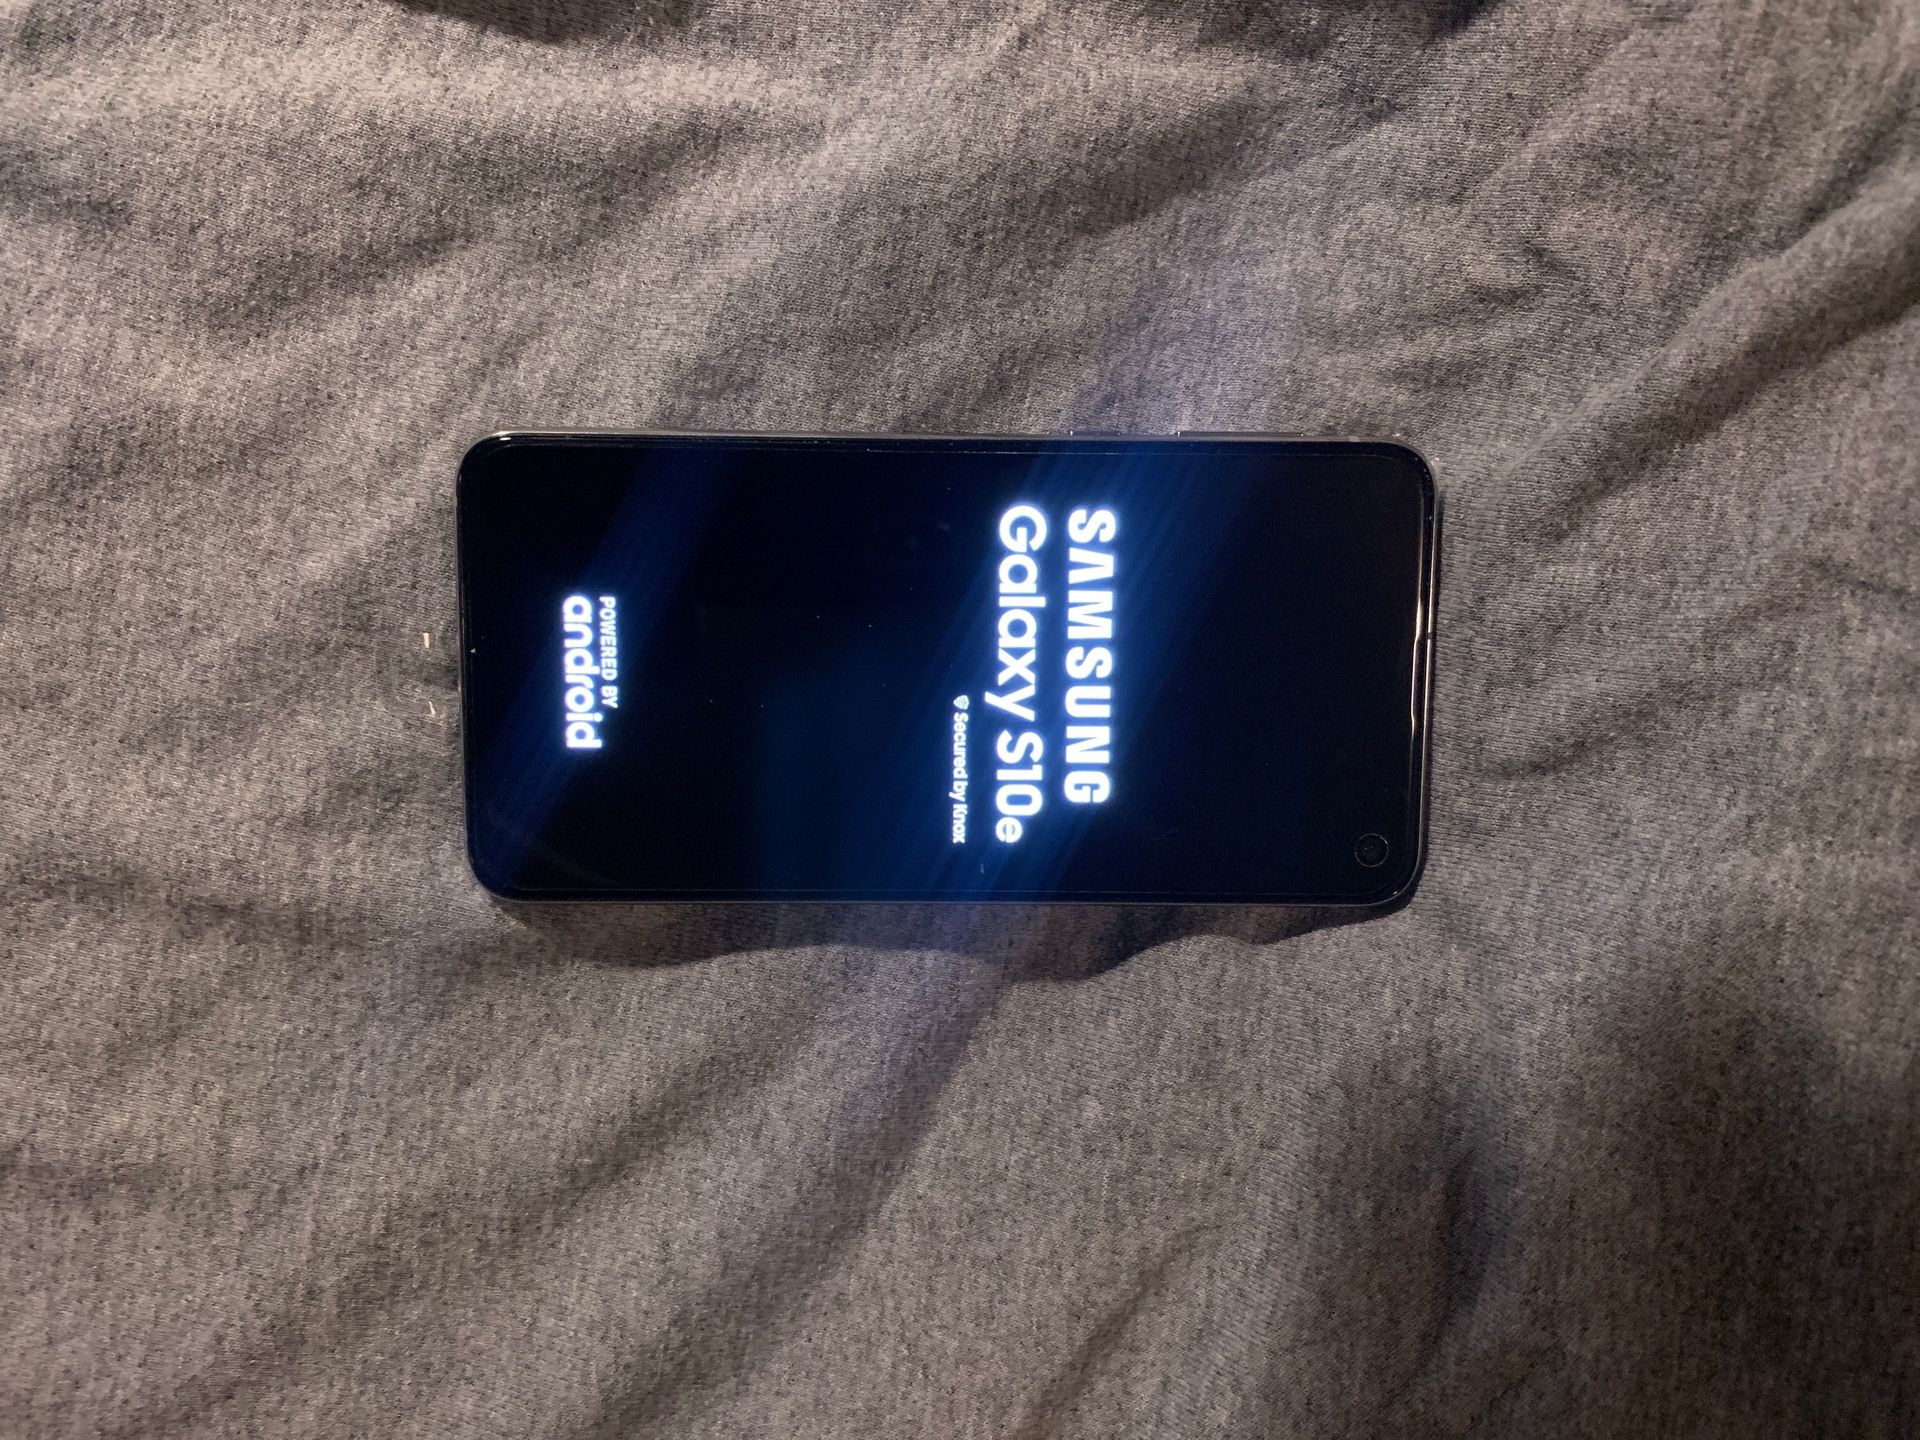 Samsung Galaxy S10e in brand new condition